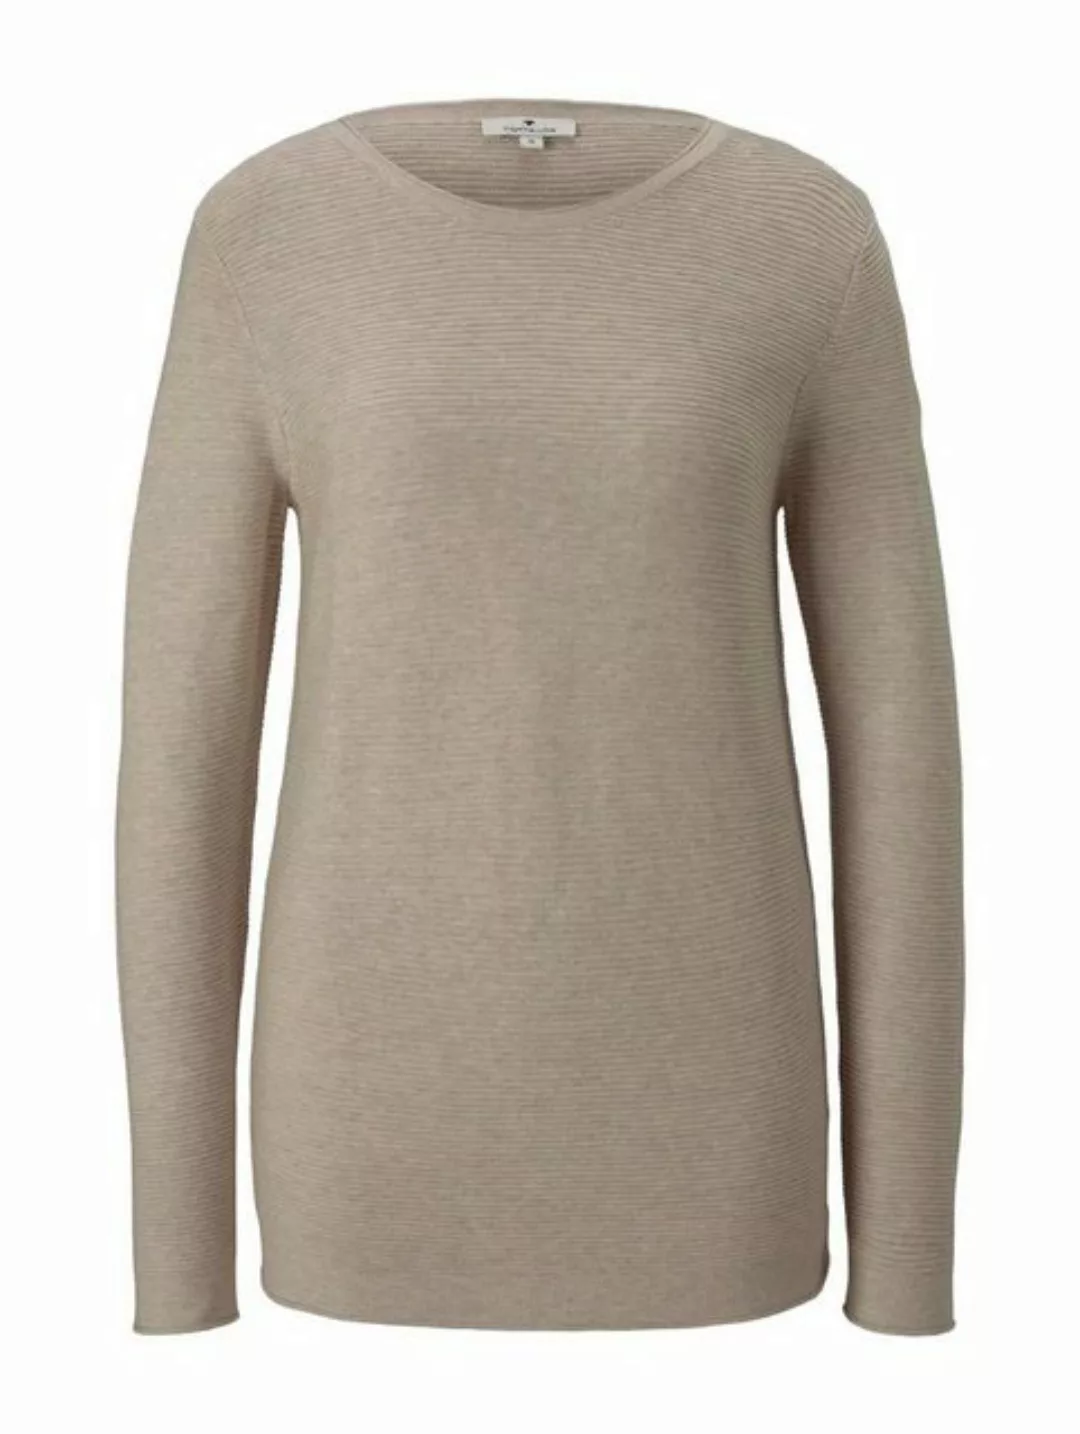 TOM TAILOR Sweatshirt sweater new ottoman, dusty alabaster melange günstig online kaufen